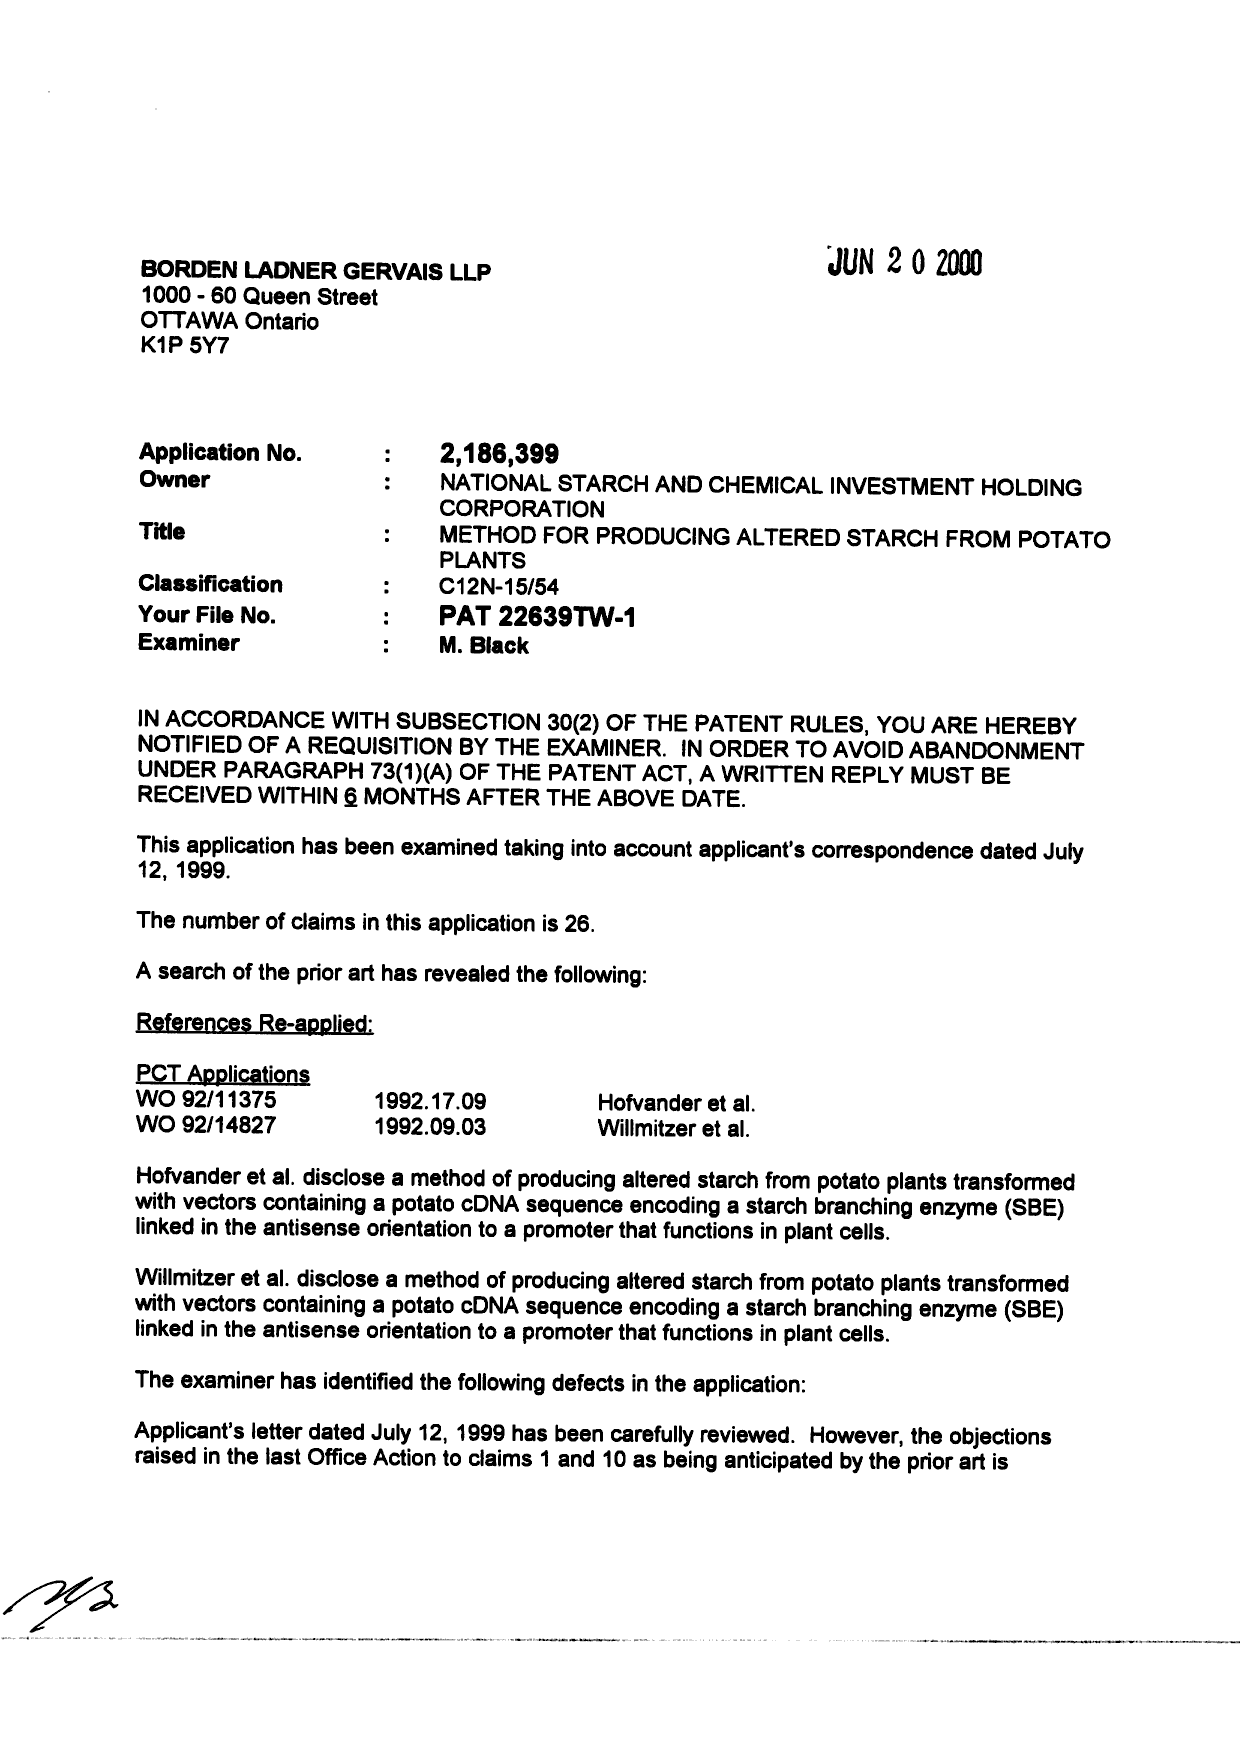 Document de brevet canadien 2186399. Poursuite-Amendment 20000620. Image 1 de 3